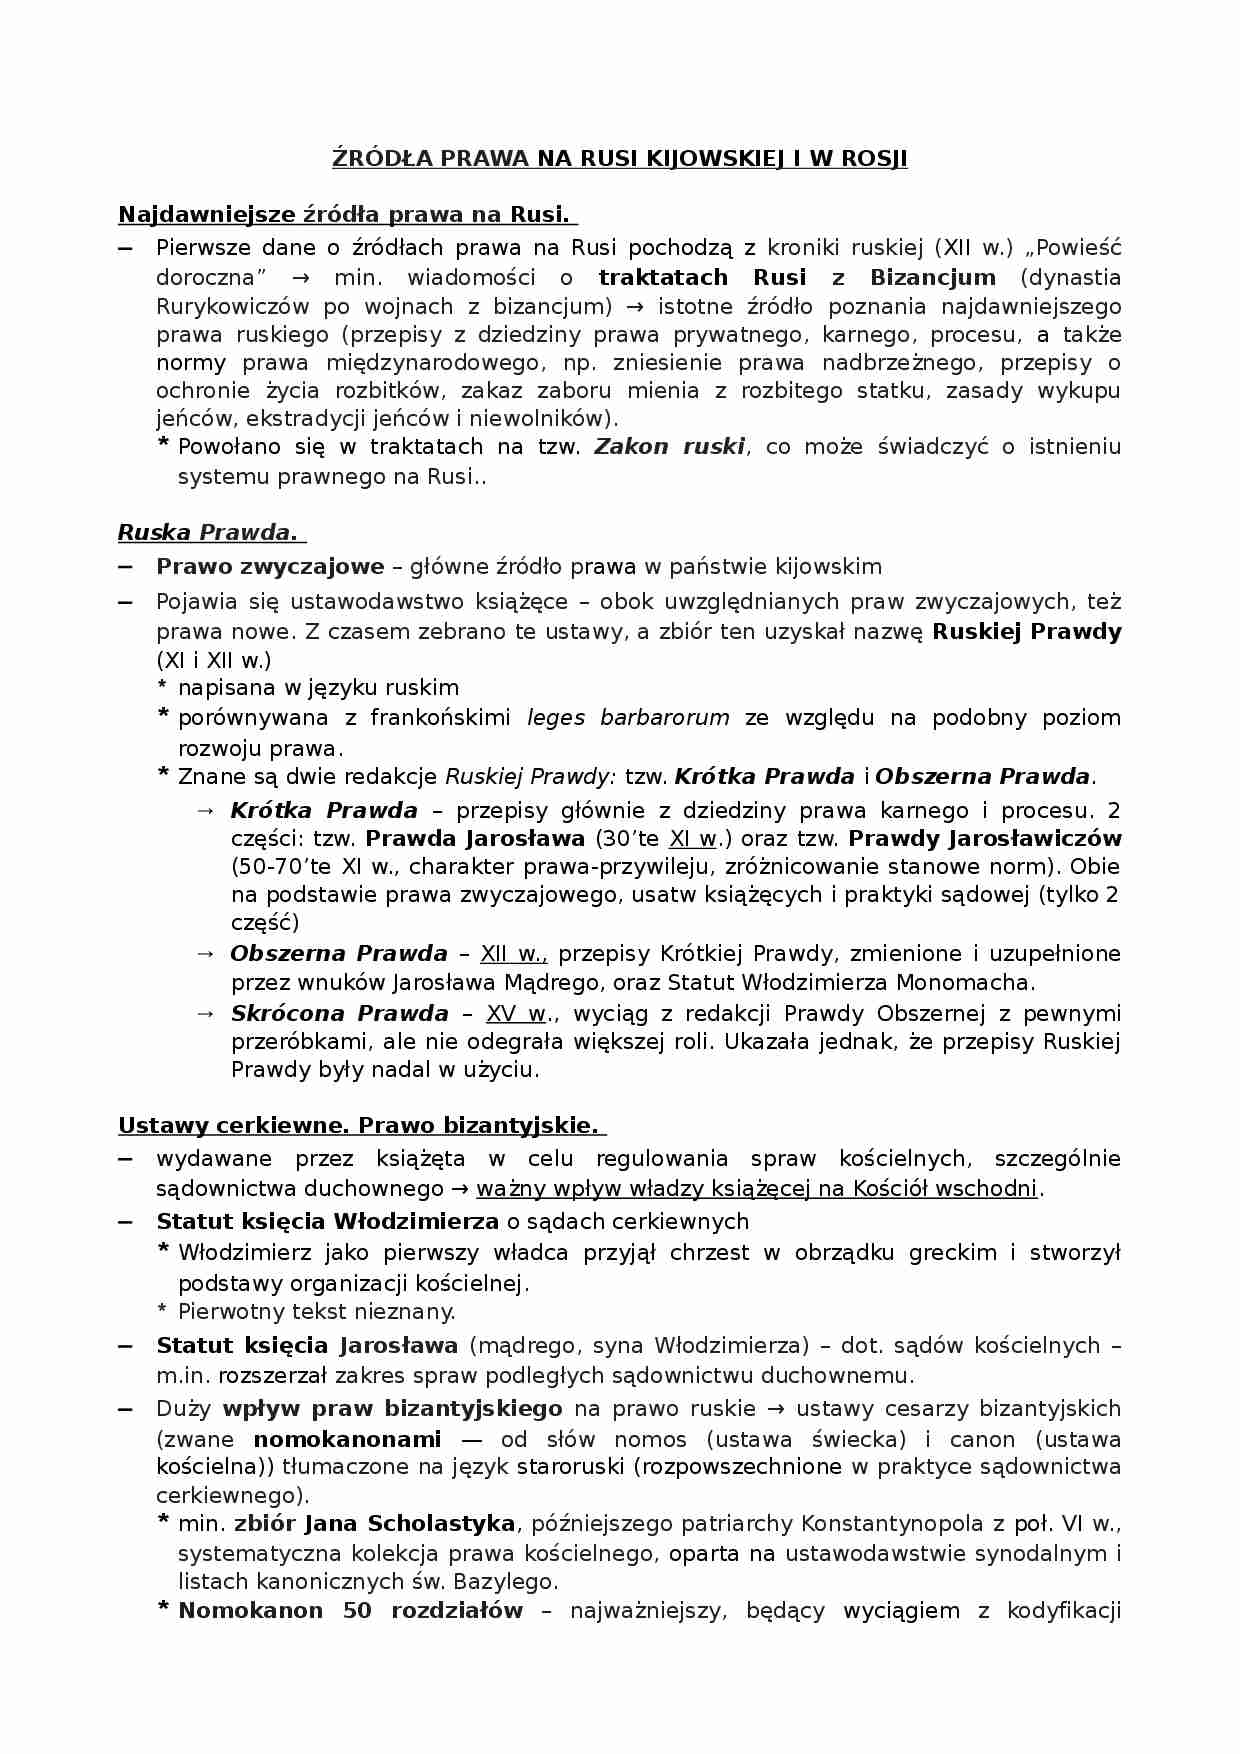 Źródła prawa na Rusi Kijowskiej i w Rosji - strona 1